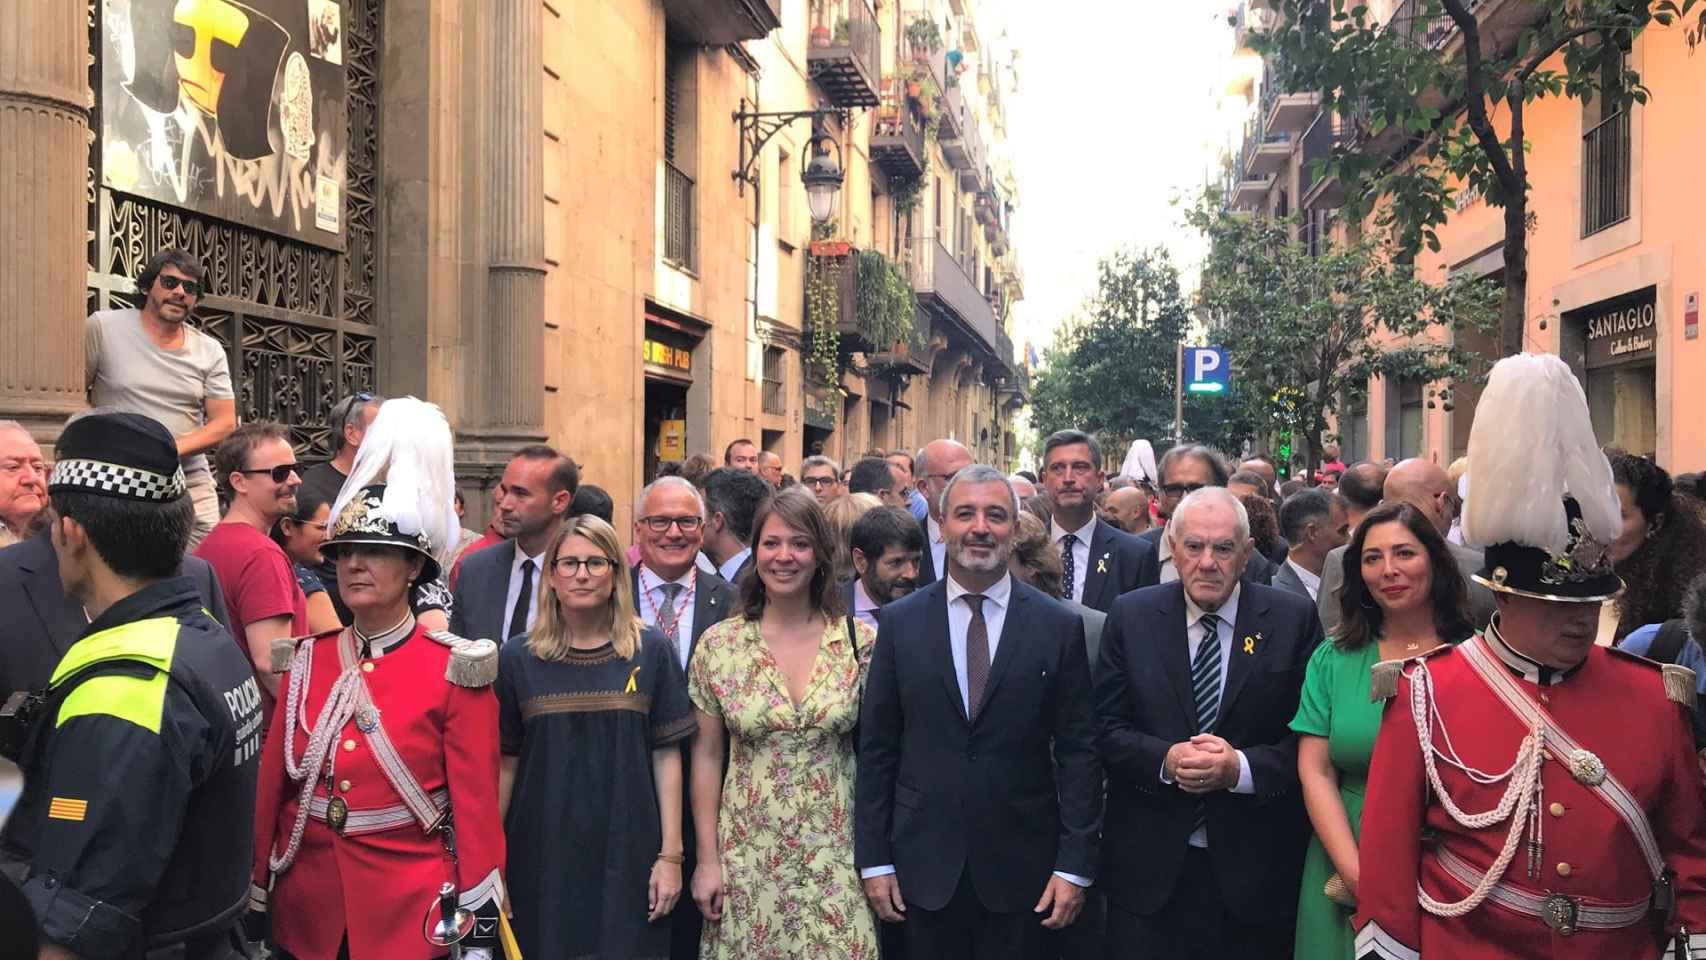 Comitiva popular de la Mercè, patrona de Barcelona, con la presencia de líderes políticos de la ciudad / EUROPA PRESS